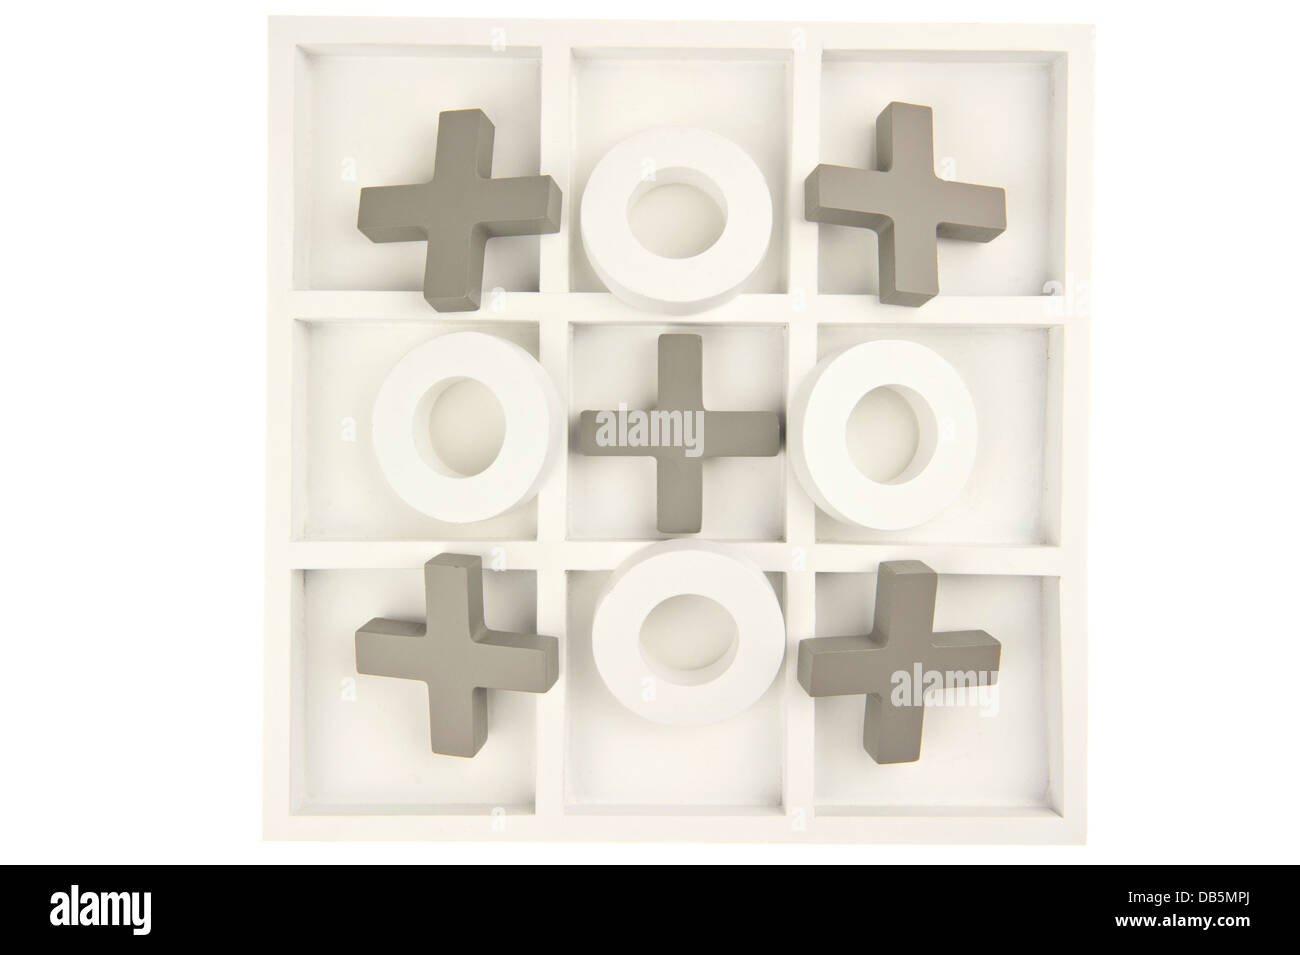 Ceros y cruces de madera tablero de juego en color gris y blanco y reproducción de piedras en forma de cruz ornamentados y aislado Foto de stock